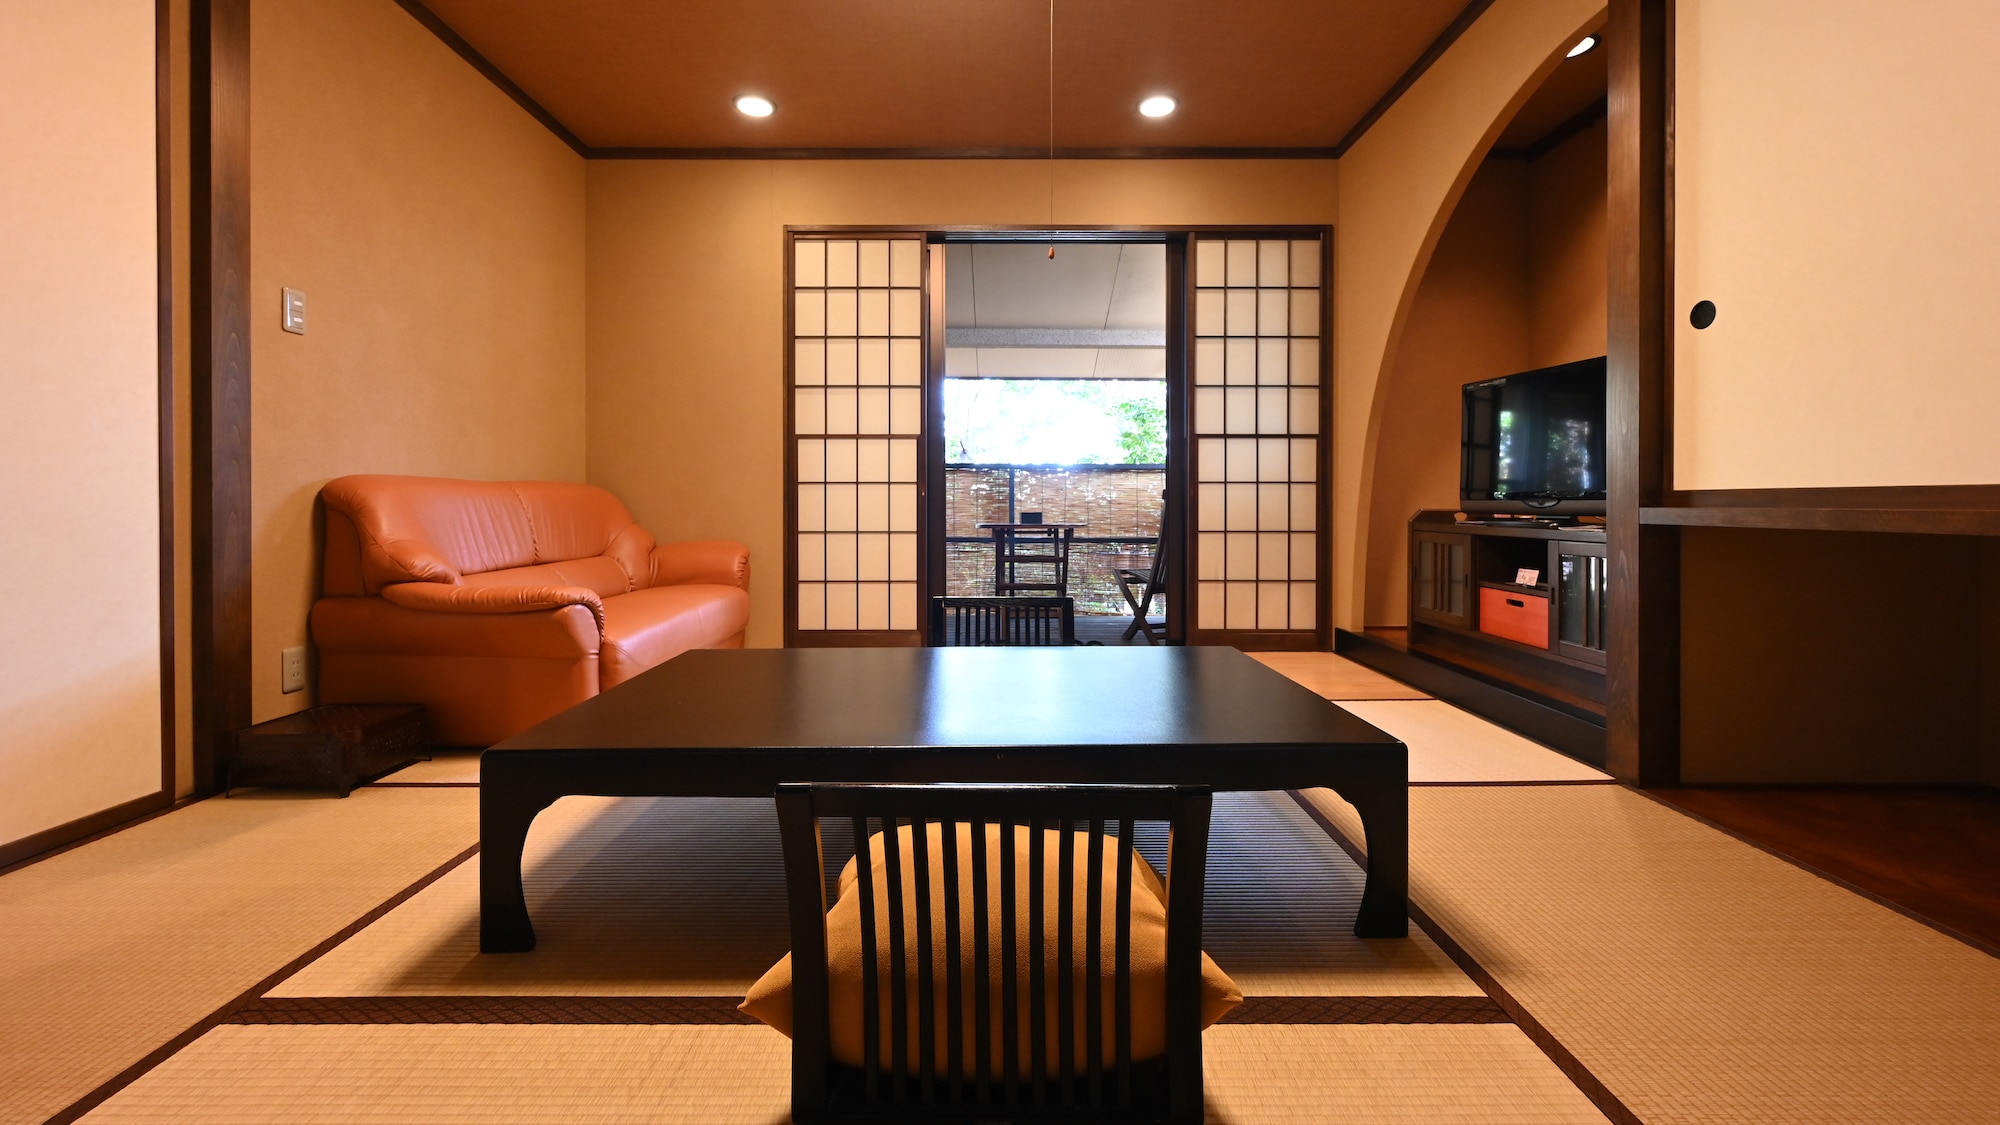 ห้องแบบญี่ปุ่นและแบบตะวันตก (8 เสื่อทาทามิ + ห้องเตียงแฝด)